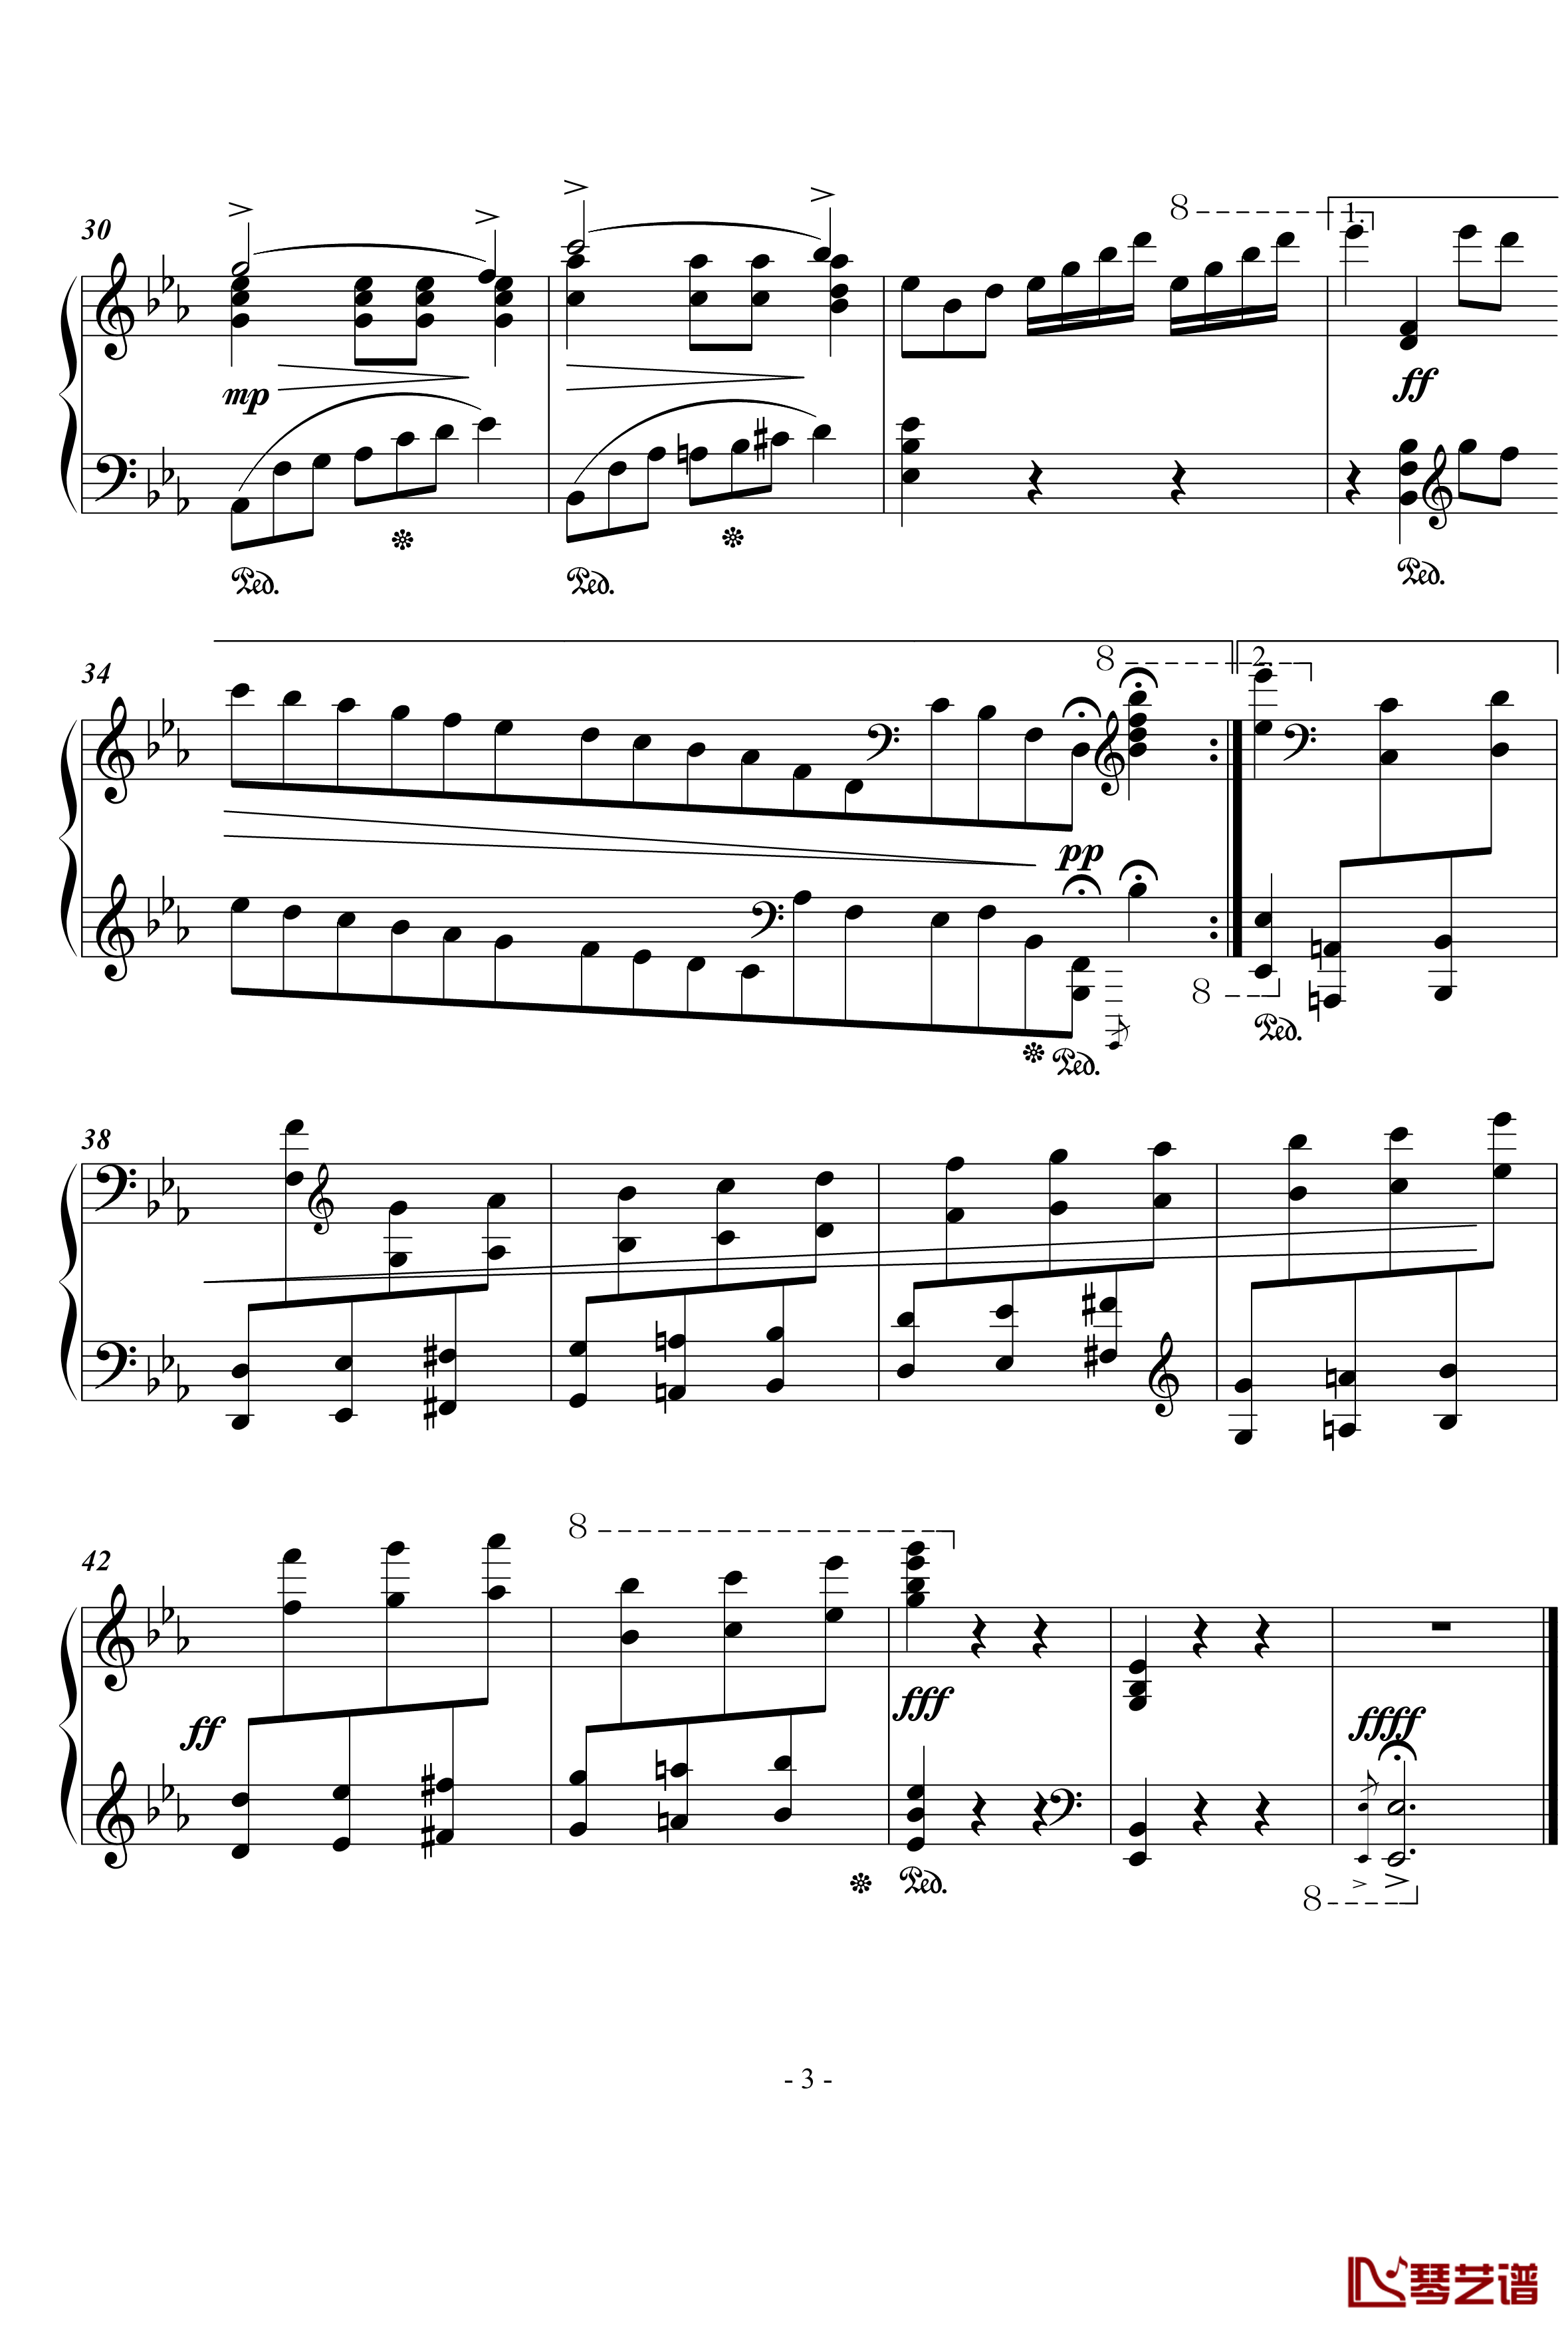 蓝色多瑙河钢琴谱-简化版-世界名曲3